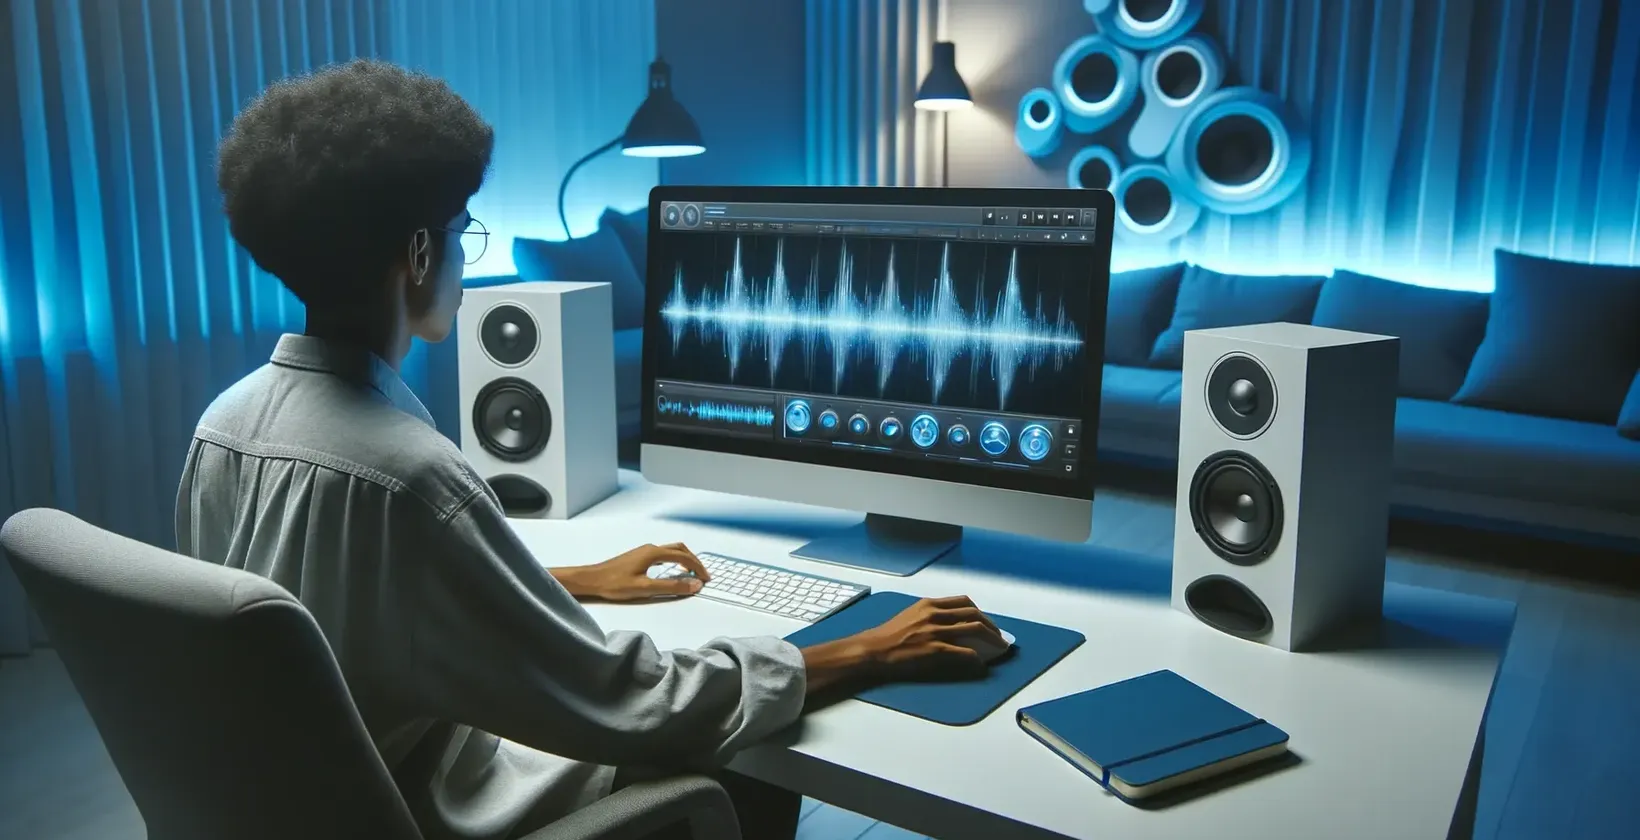 Oseba, ki dela na računalniku in dodaja besedilo k posnetemu videu v sodobnem studijskem okolju z zvočniki